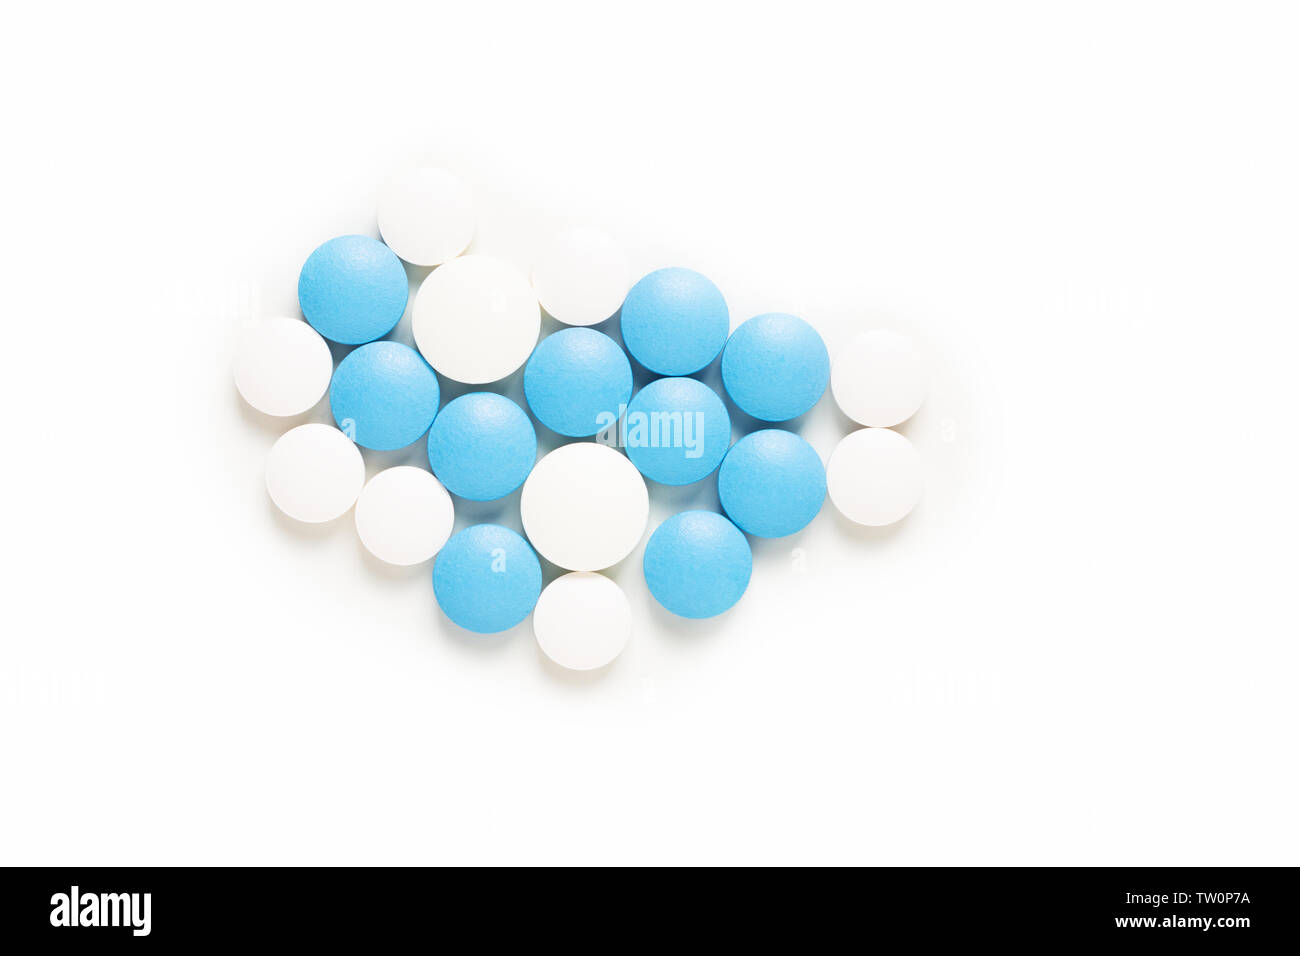 Gesundheit und Medikamente Konzept blaue und weiße Pillen, Drogen oder Tabletten auf weißem Hintergrund mit Kopie Raum Stockfoto